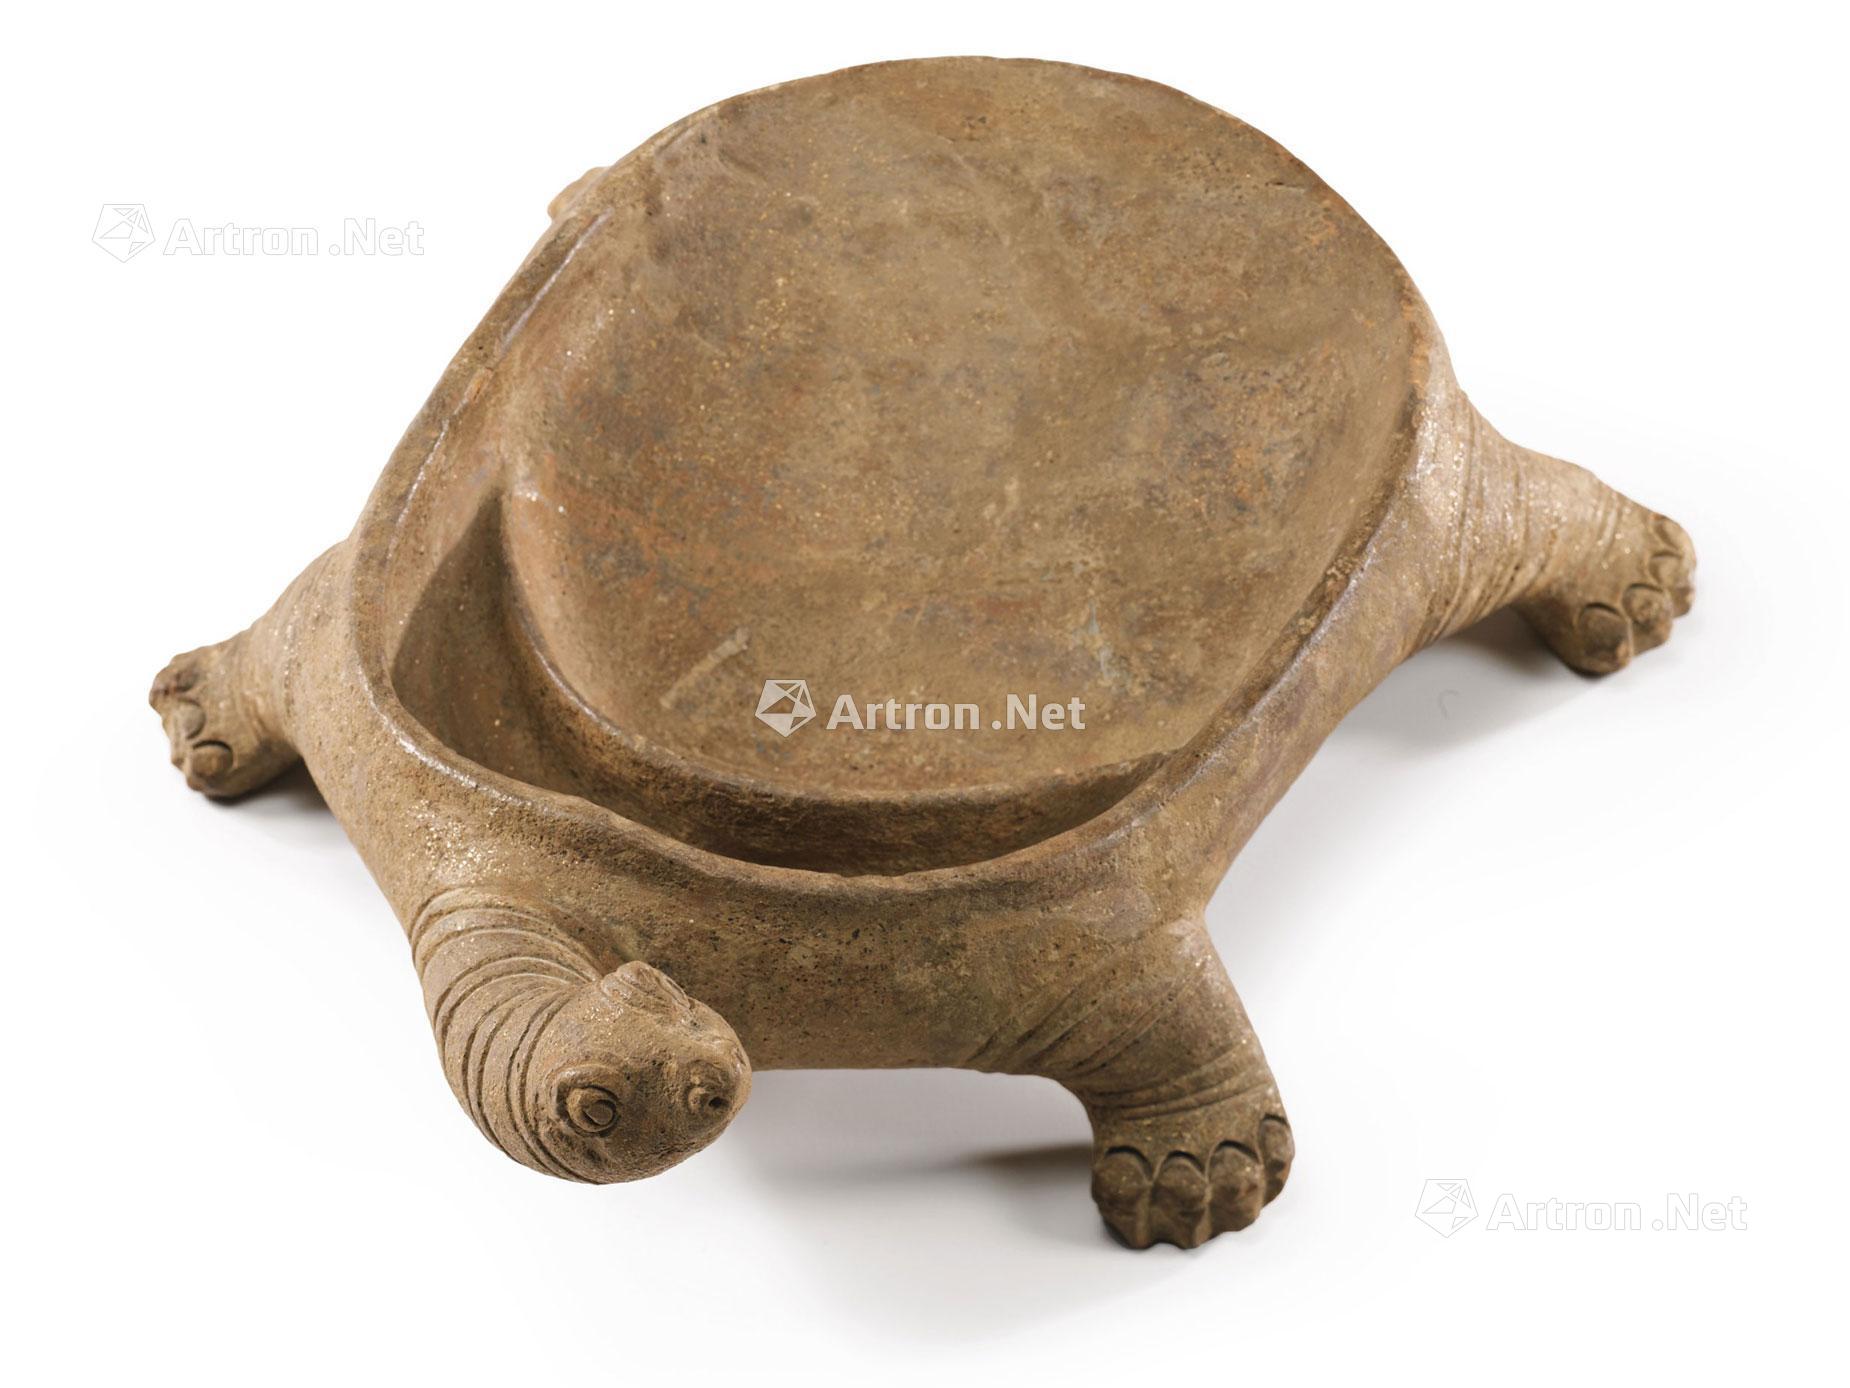 黑陶龟形砚图片